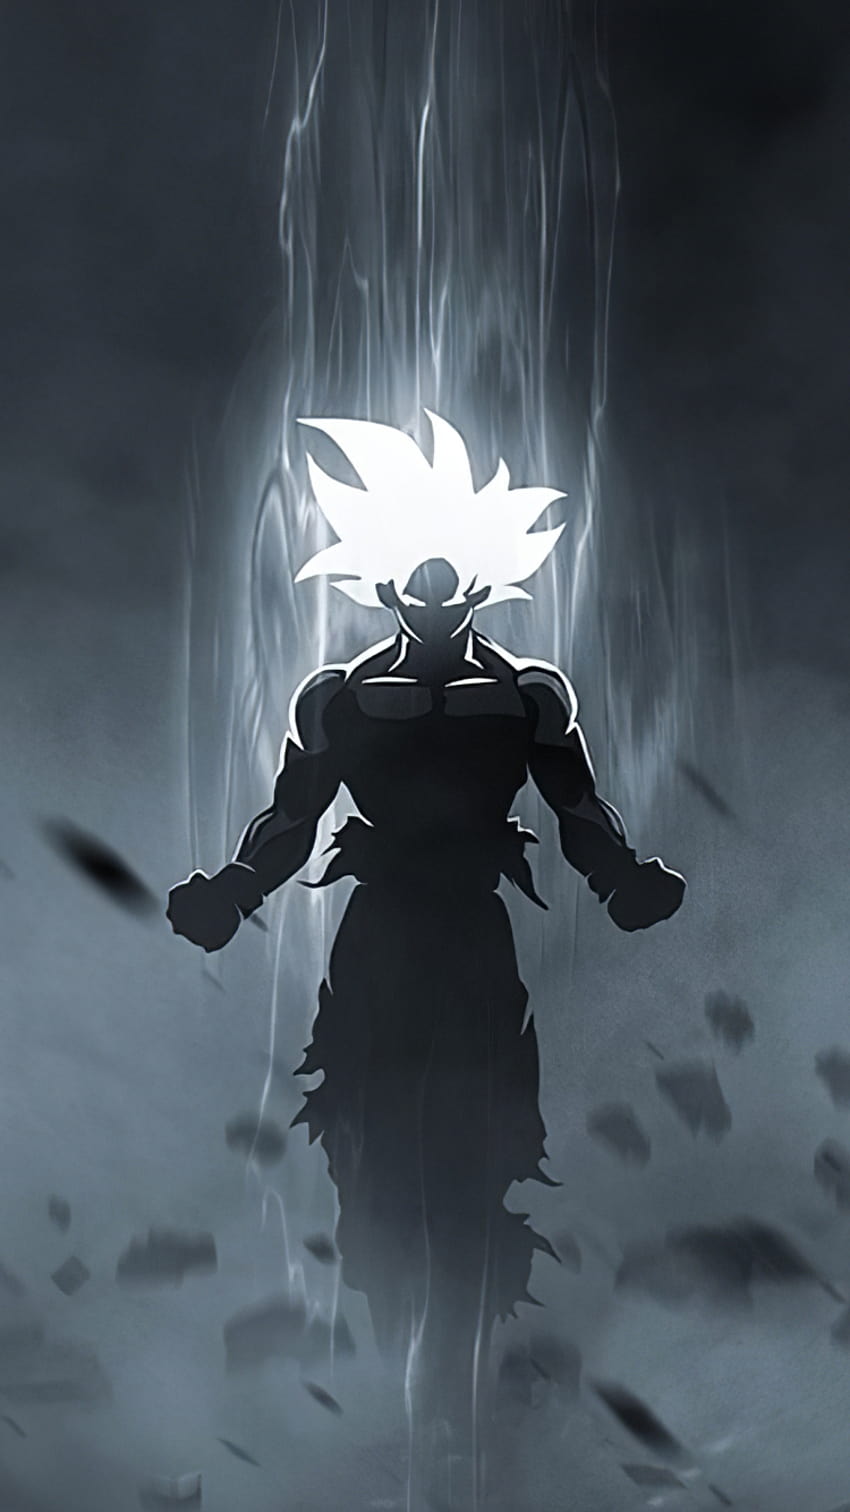 Glowing Goku: Chào đón chiến binh Goku với đường nét nổi bật và màu sắc tươi sáng, tạo nên vẻ đẹp sáng chói và tràn đầy sức sống. Hãy tận hưởng những “ánh sáng trong bóng tối\